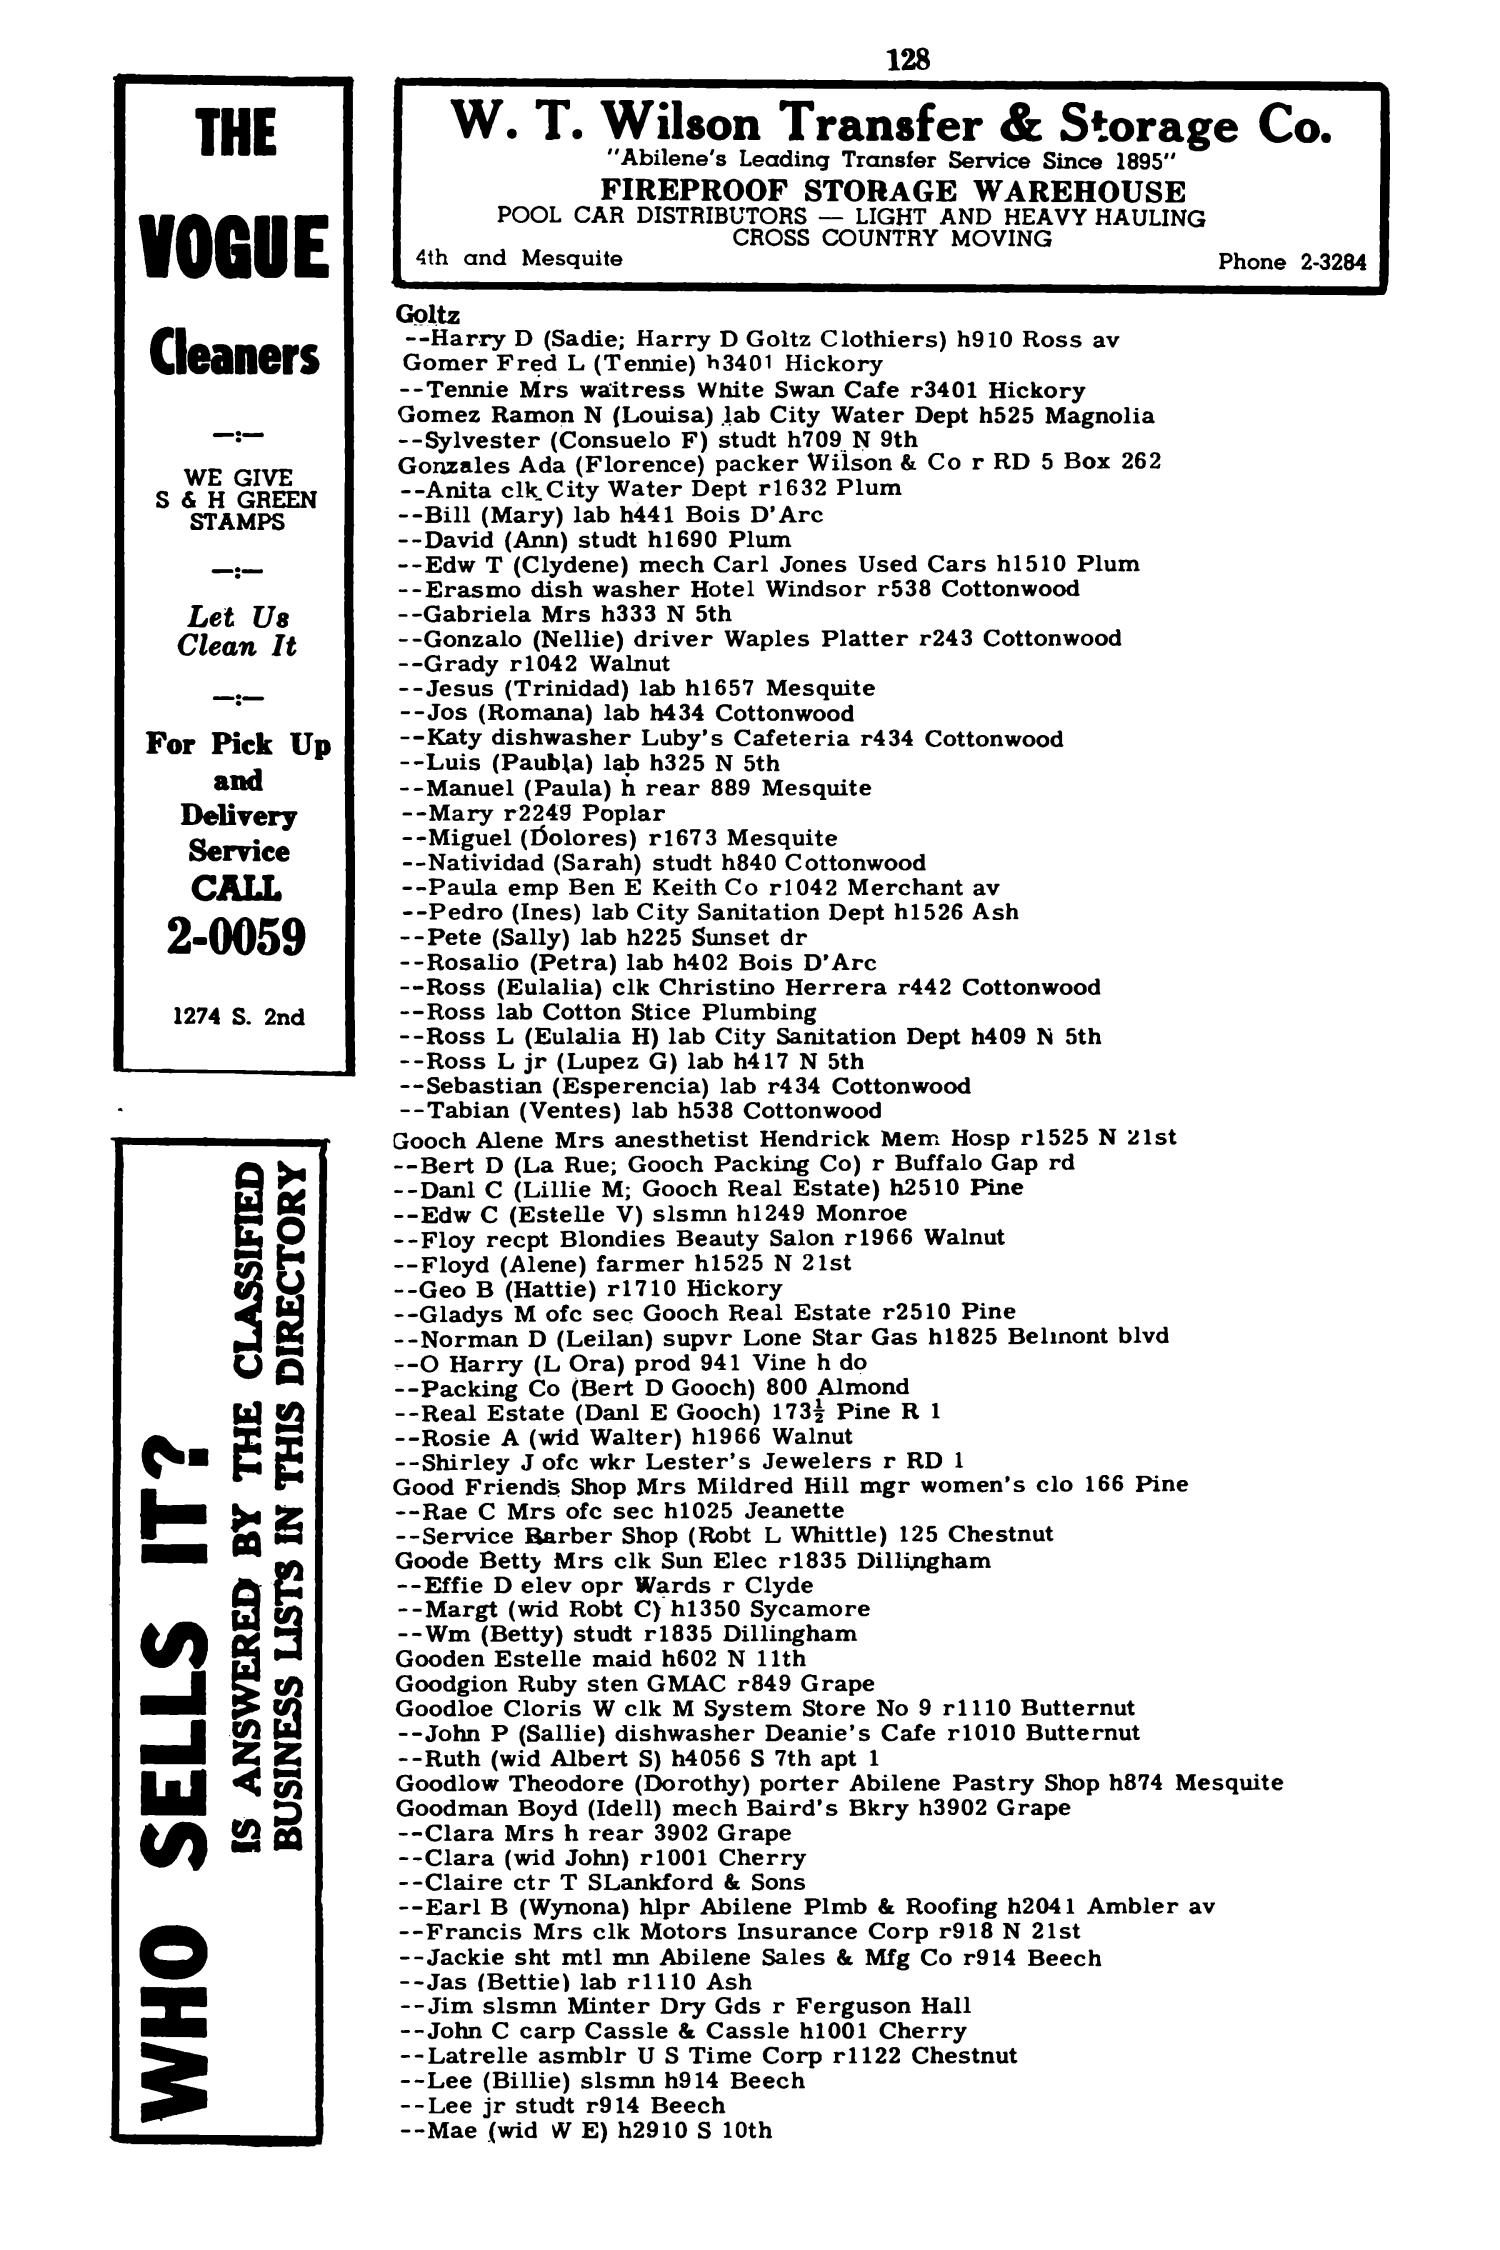 Worley's Abilene (Taylor County, Texas) City Directory, 1951
                                                
                                                    128
                                                